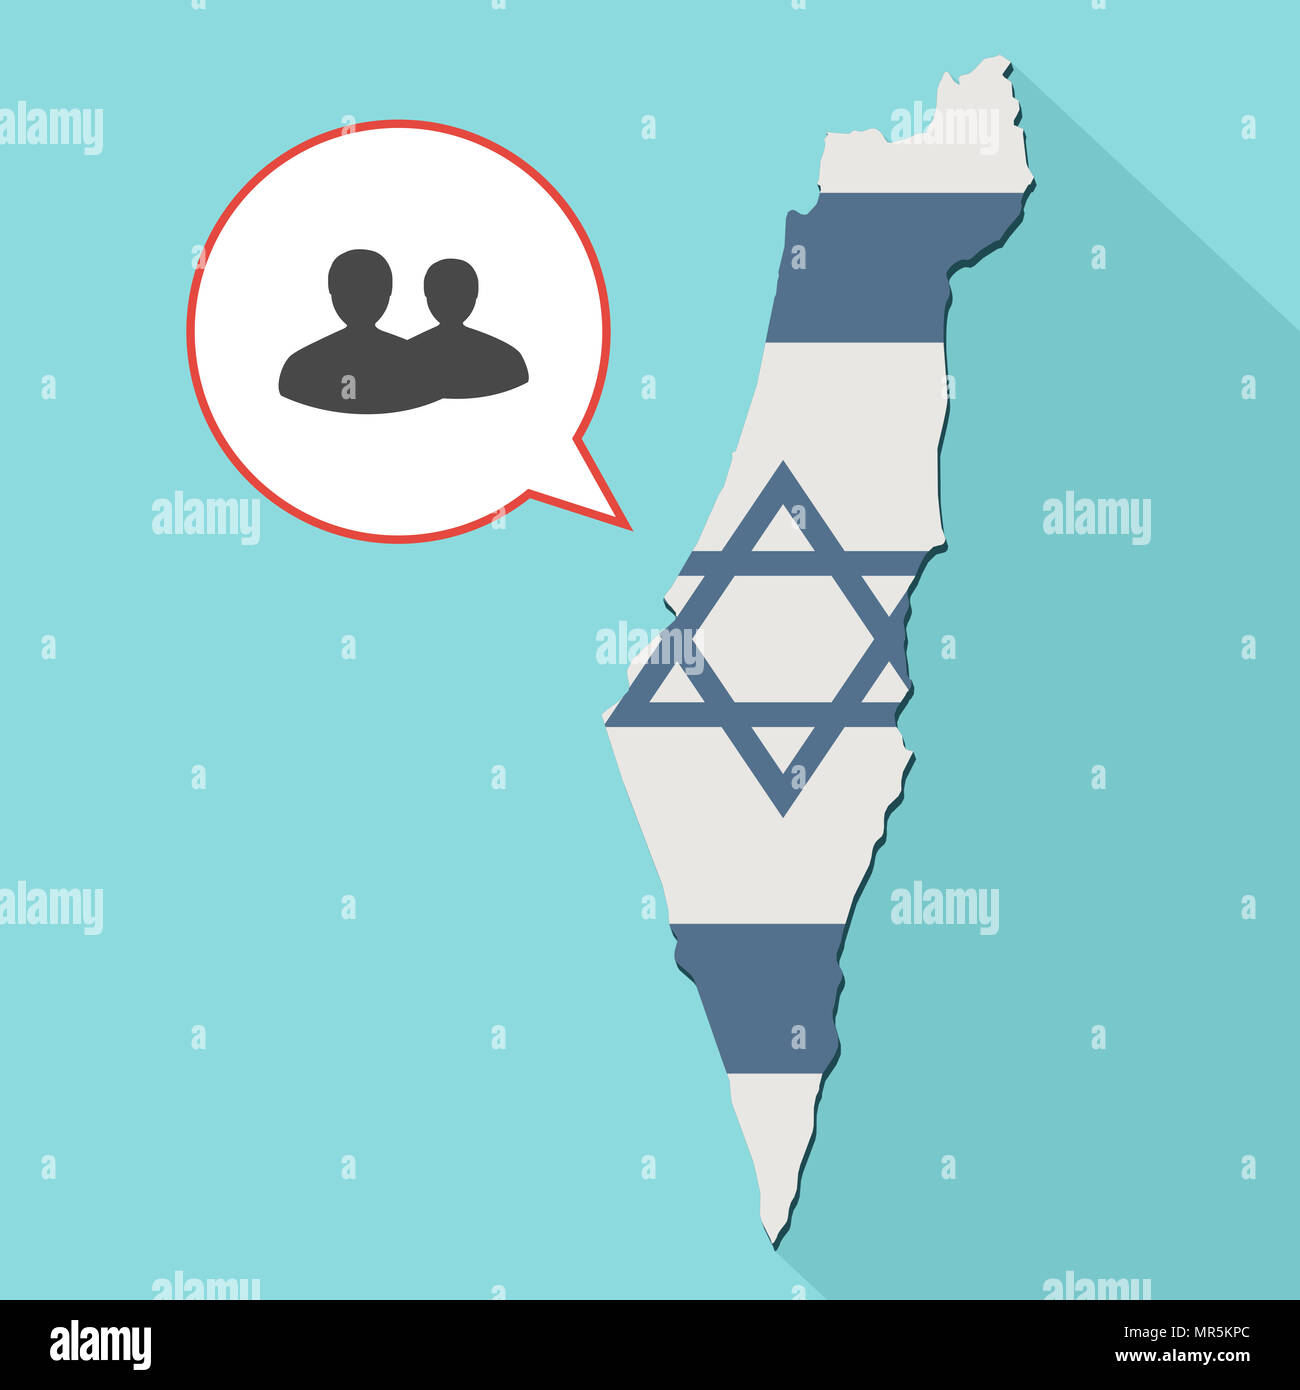 Illustrazione di una lunga ombra Israele mappa con la sua bandiera e un palloncino di fumetti con due persone silhouette Foto Stock